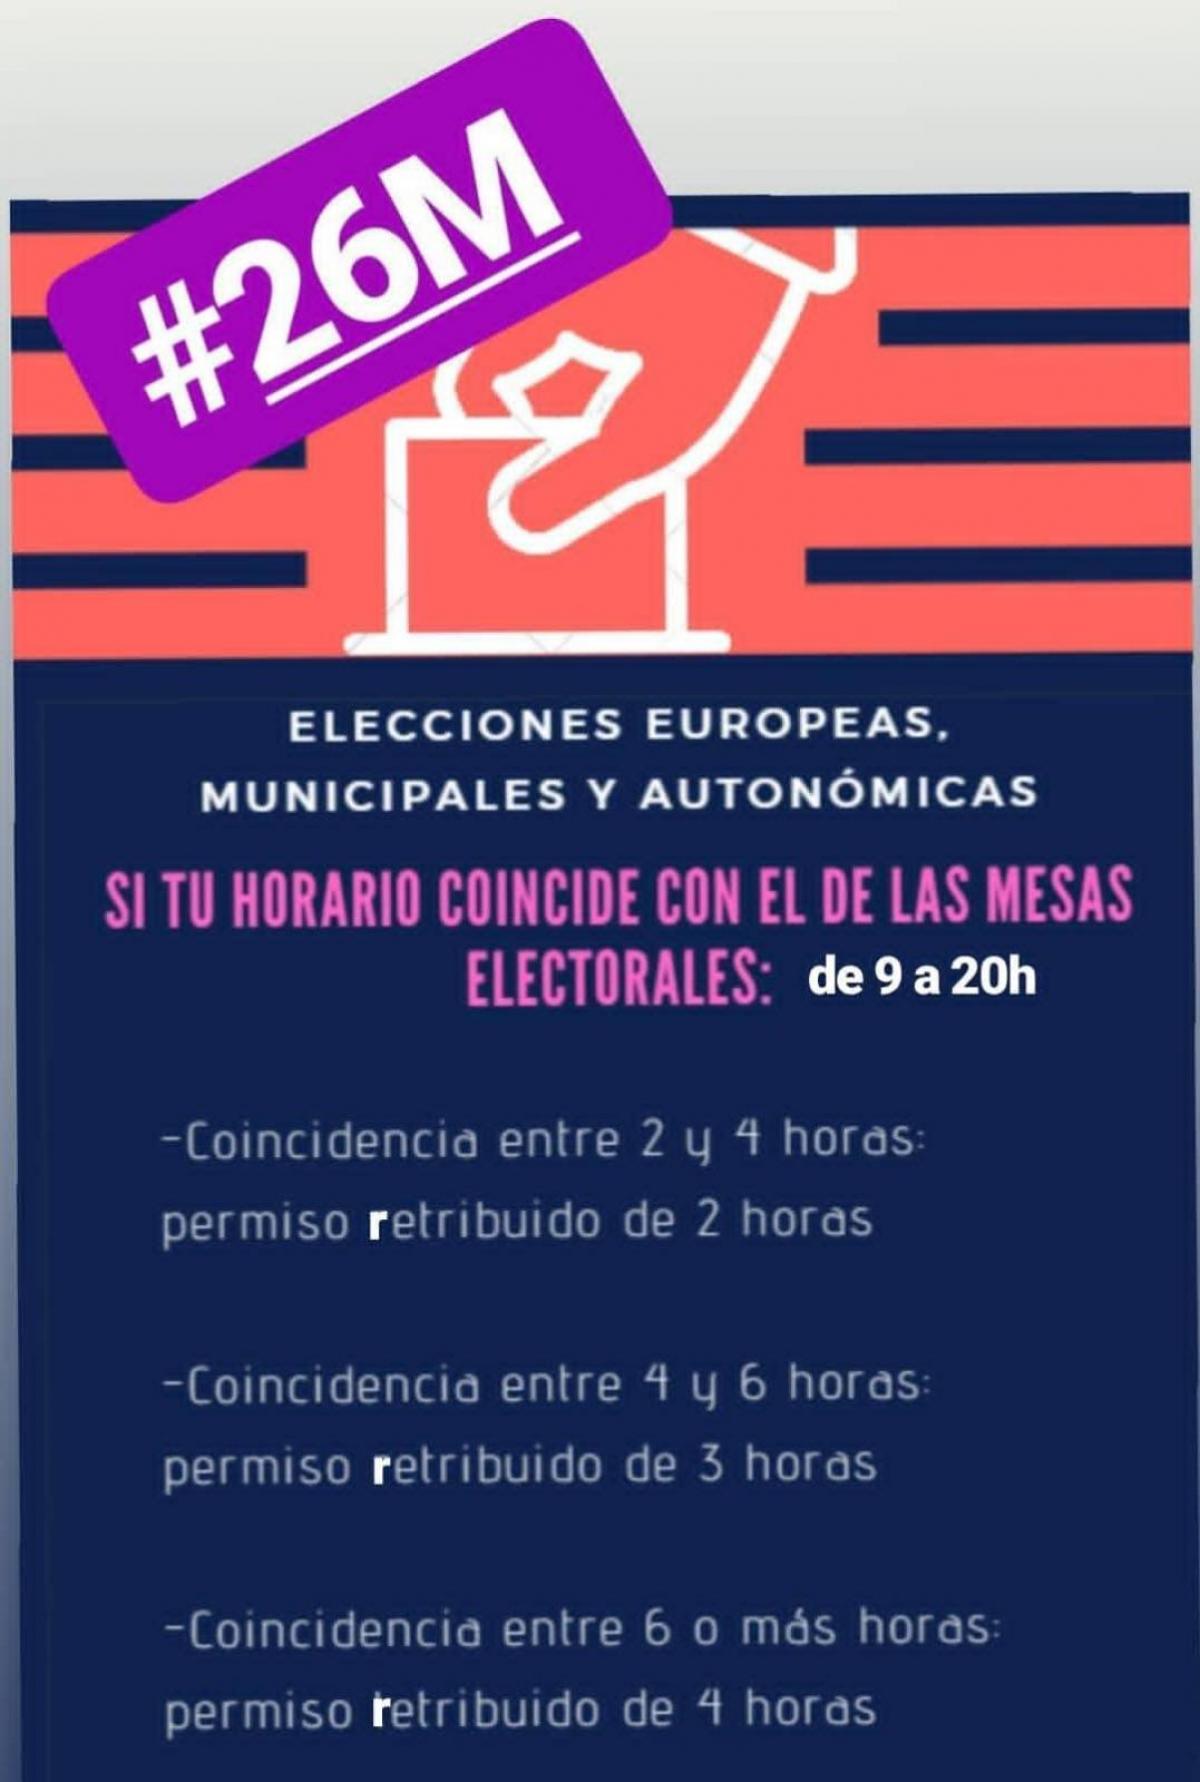 Permisos retribuidos durante la jornada laboral el día de las elecciones del 26 de mayo de 2019